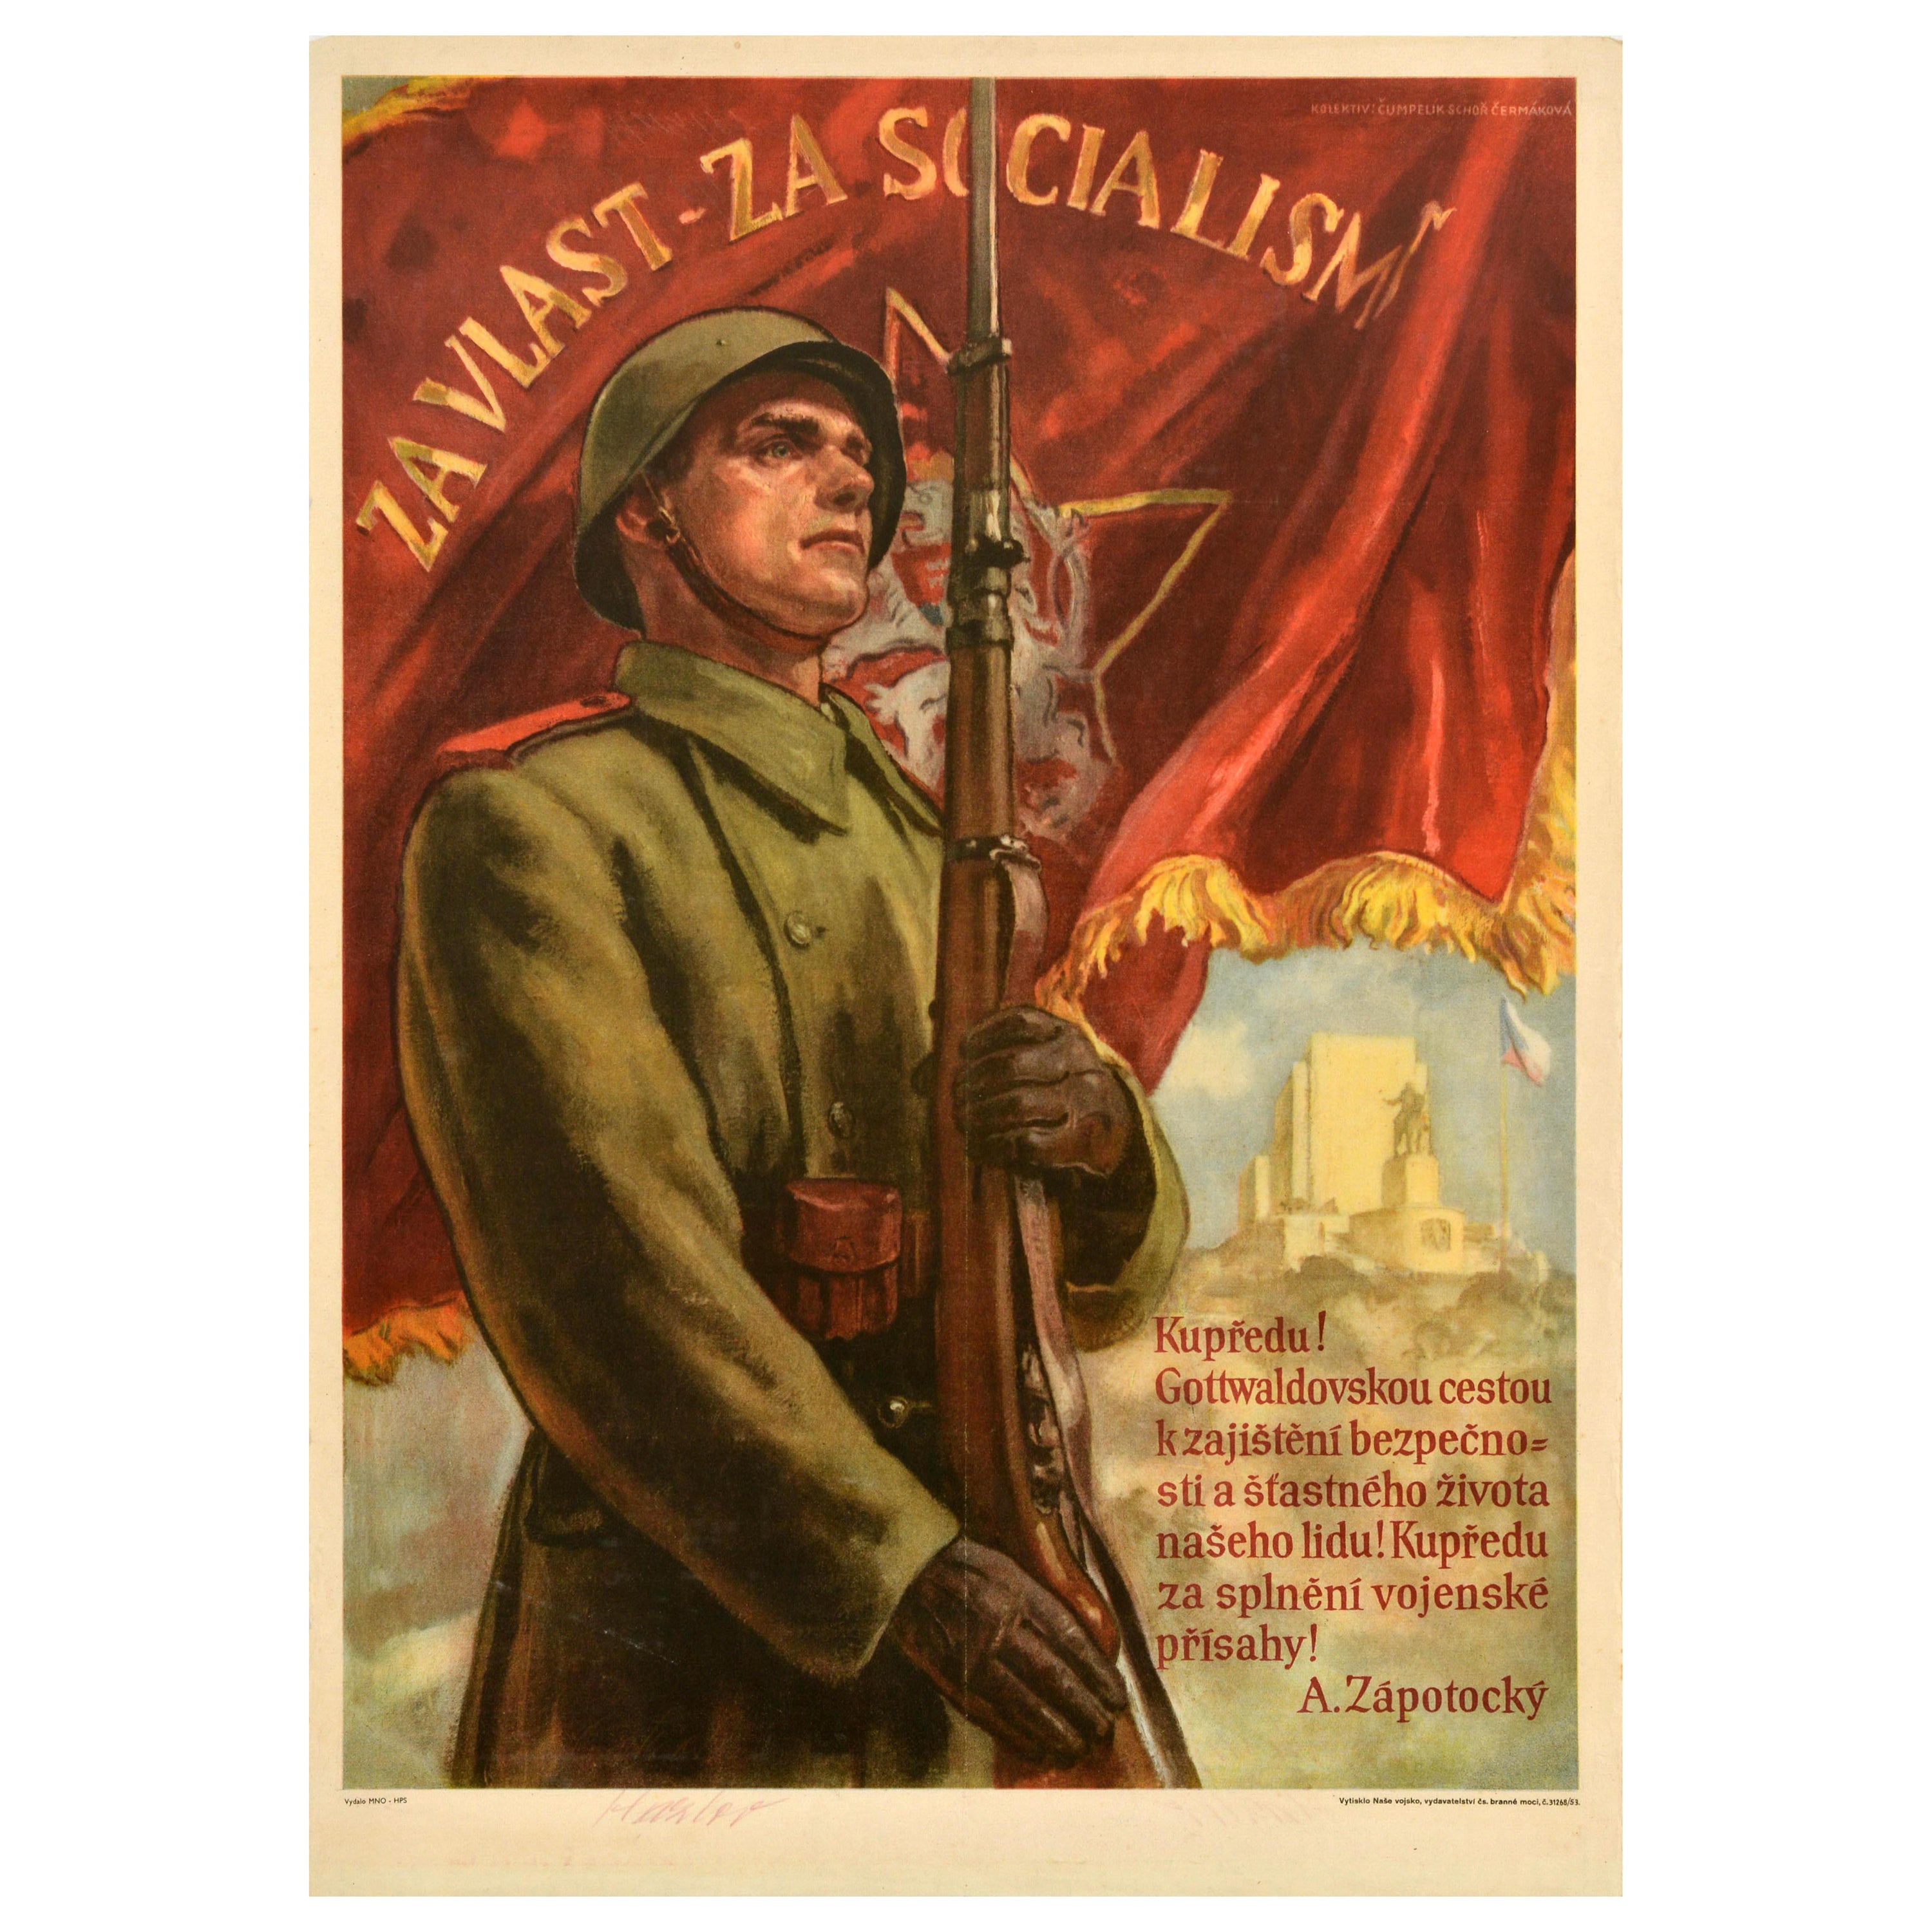 Original Vintage Czechoslovak Propaganda Poster For Motherland For Socialism